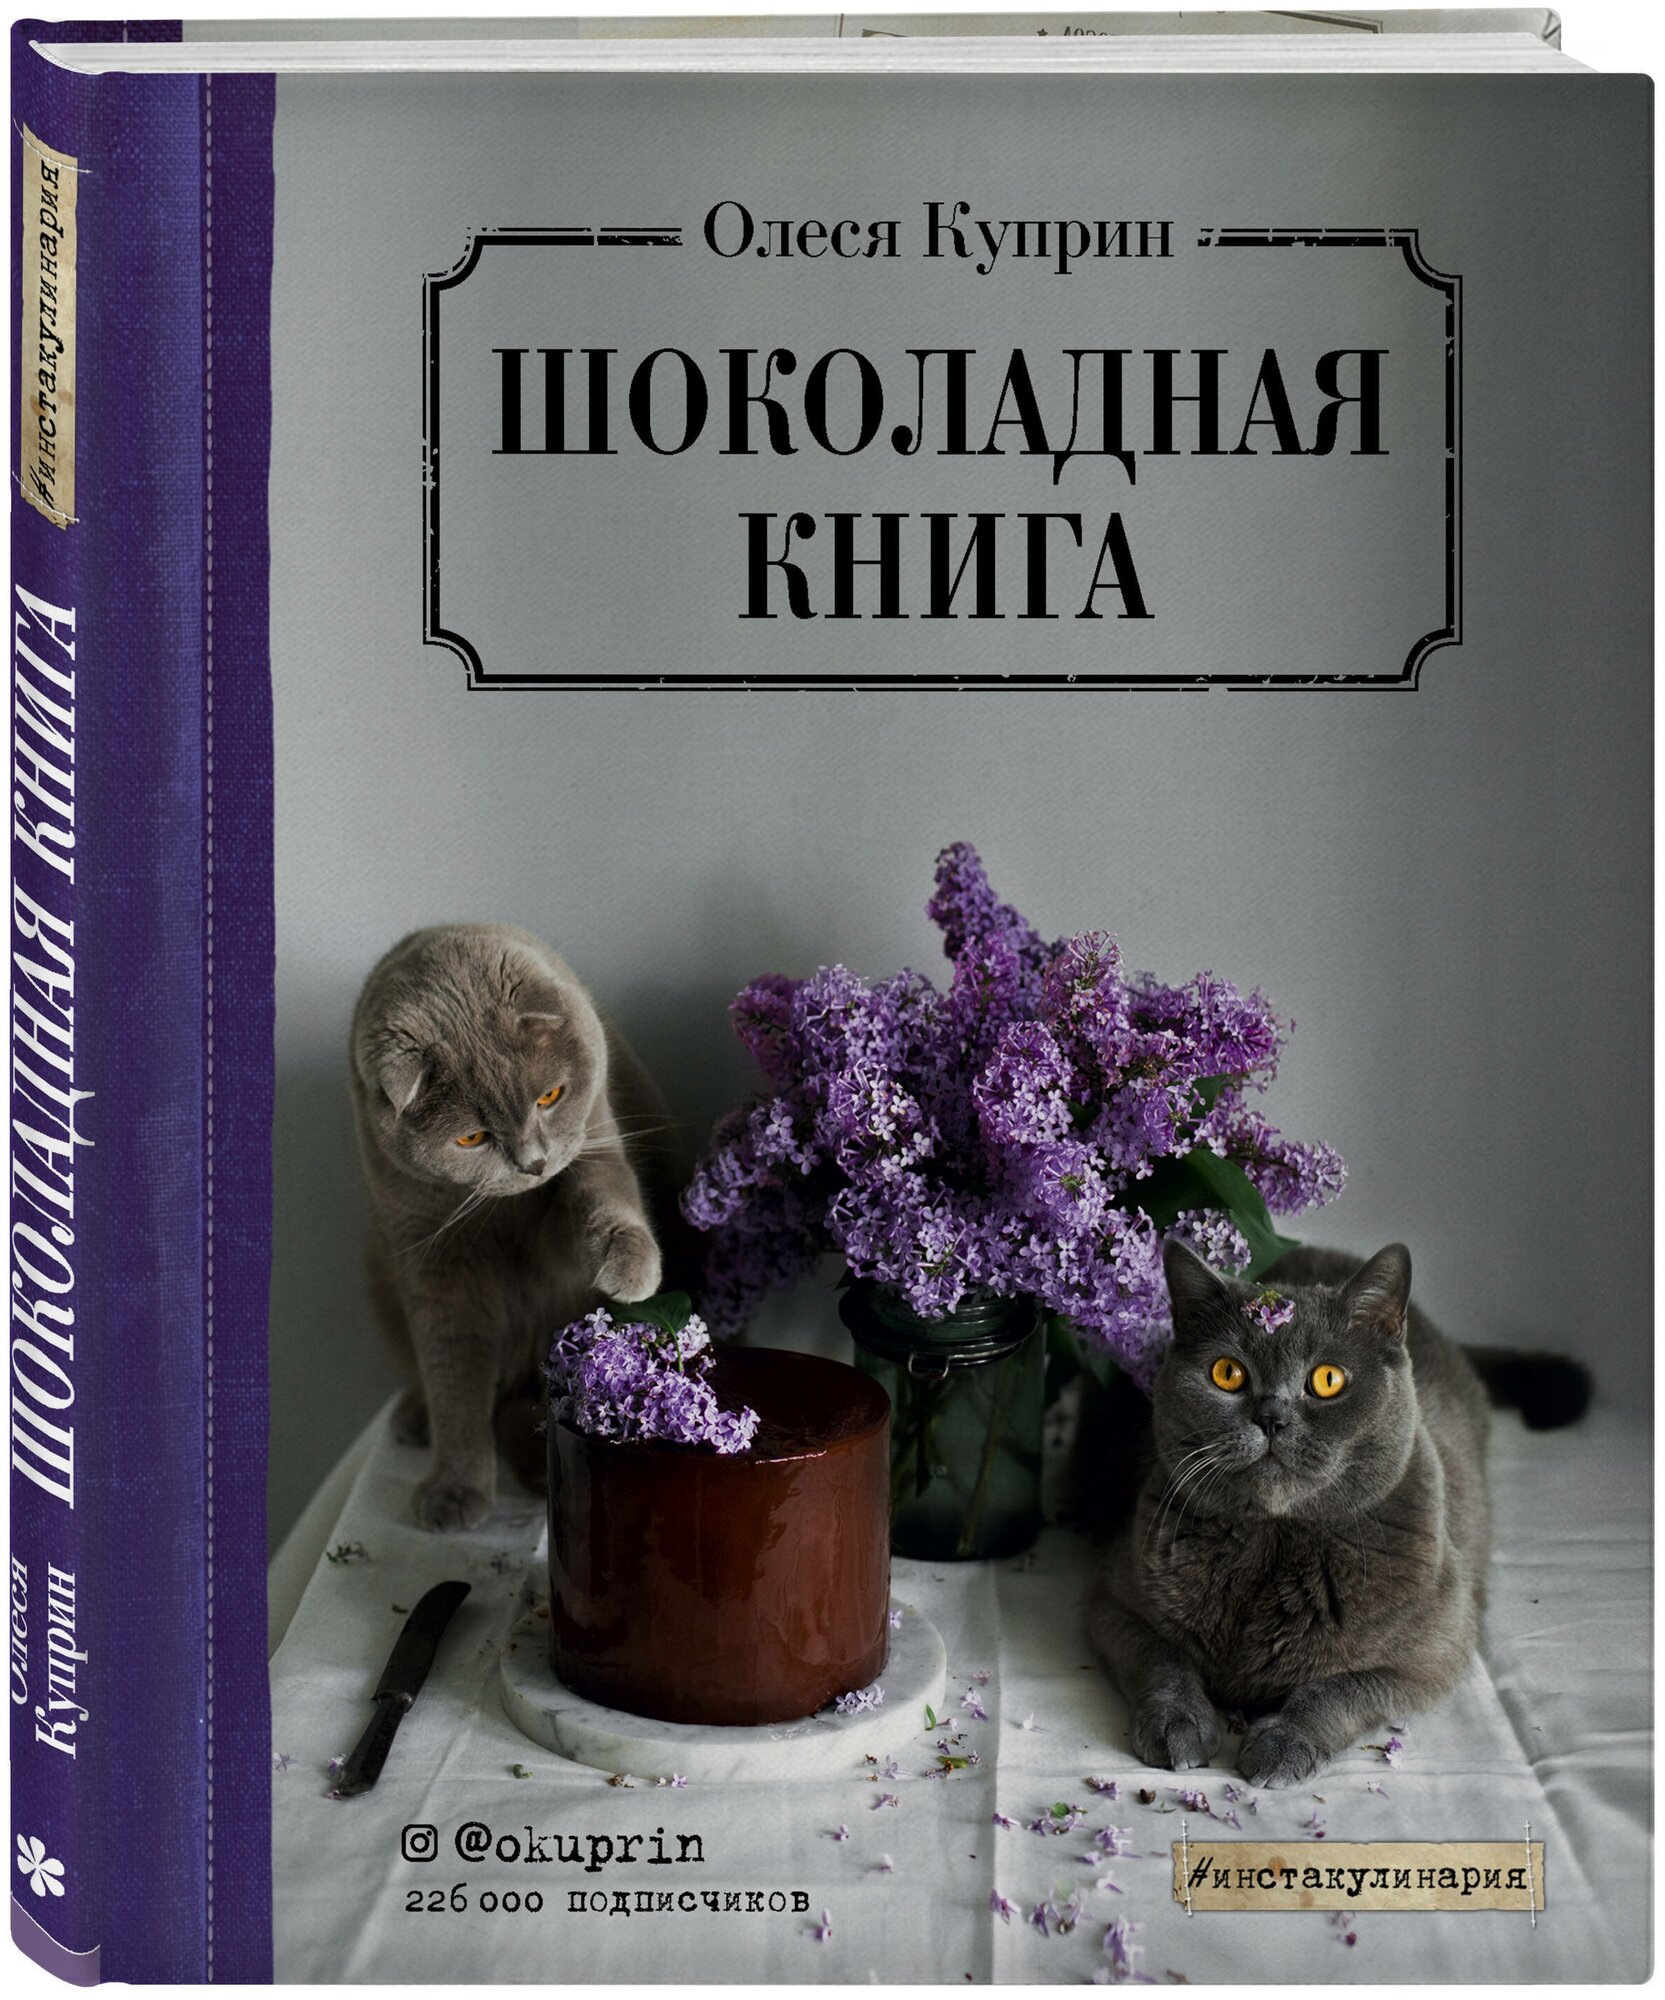 Шоколадная книга (Олеся Куприн) - фото №1